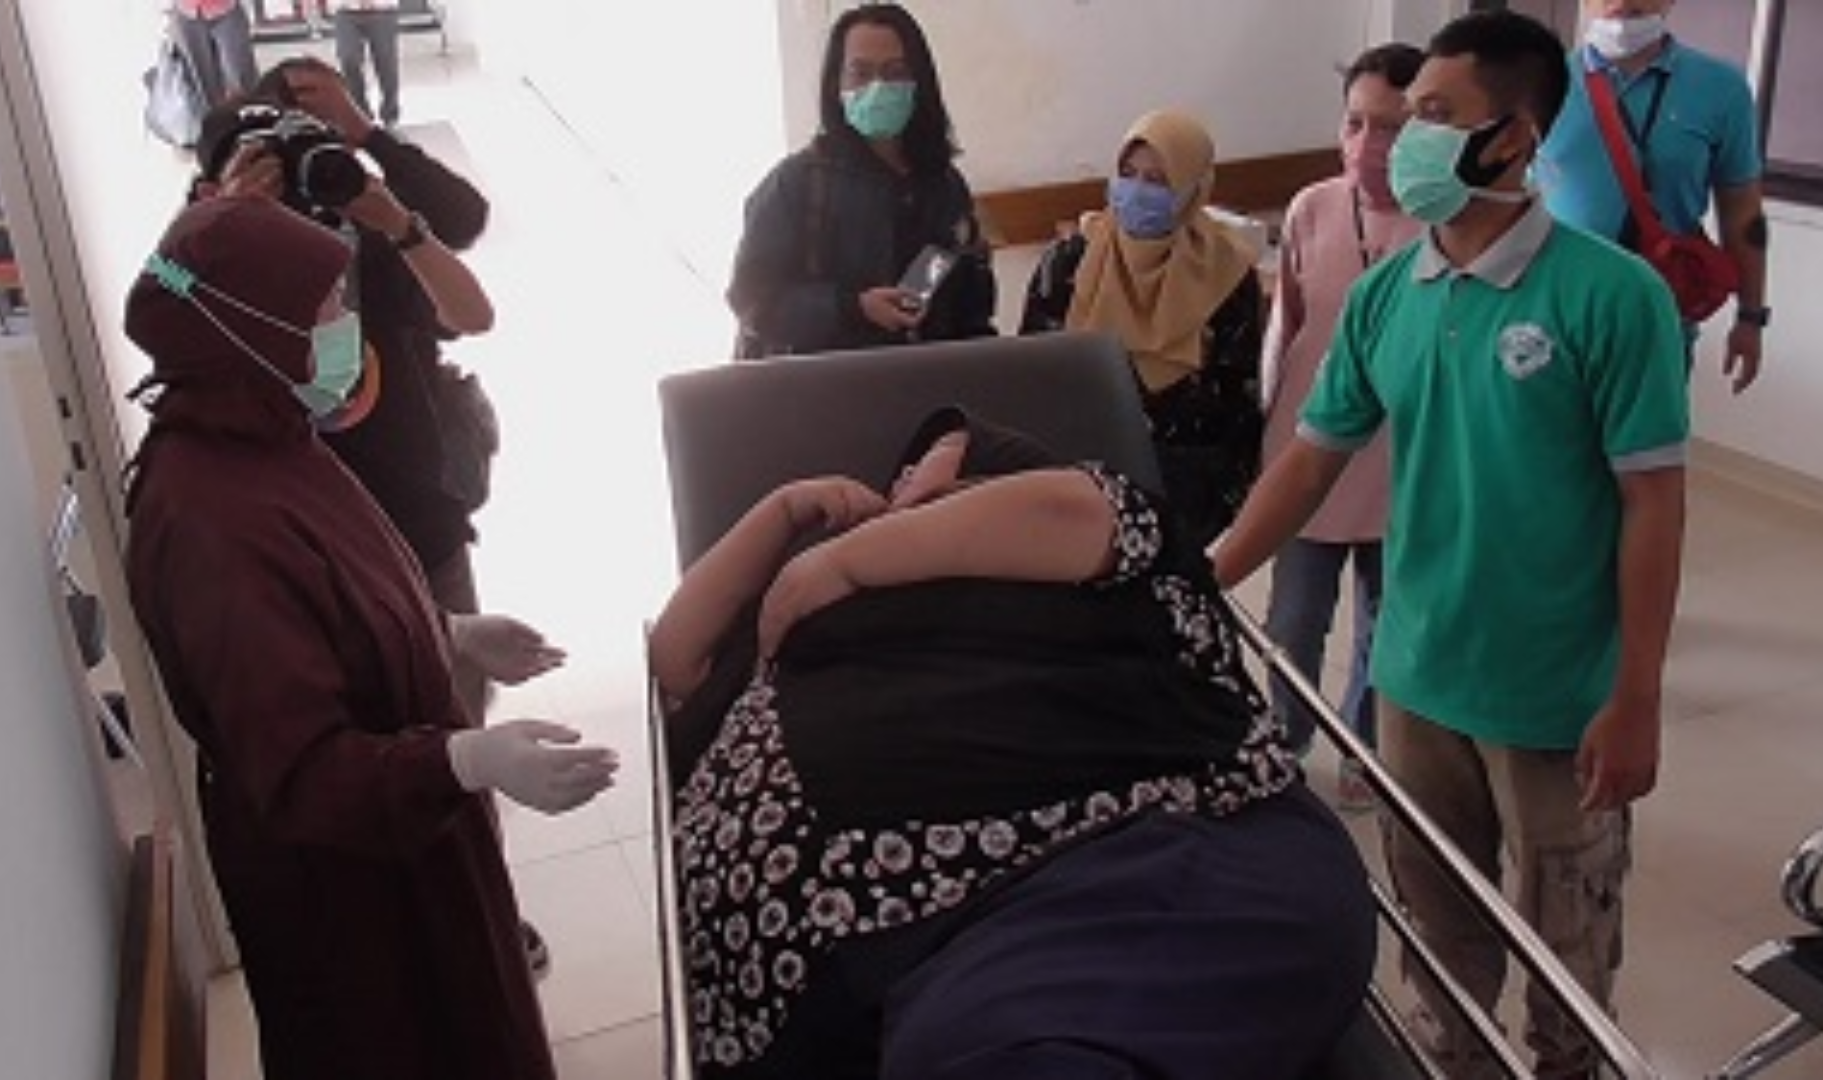 Heni Jubaedah pasien obesitas asal Tanjungsari, Sumedang telah dijemput oleh RSUD Sumedang untuk diperiksa dan diobati.*